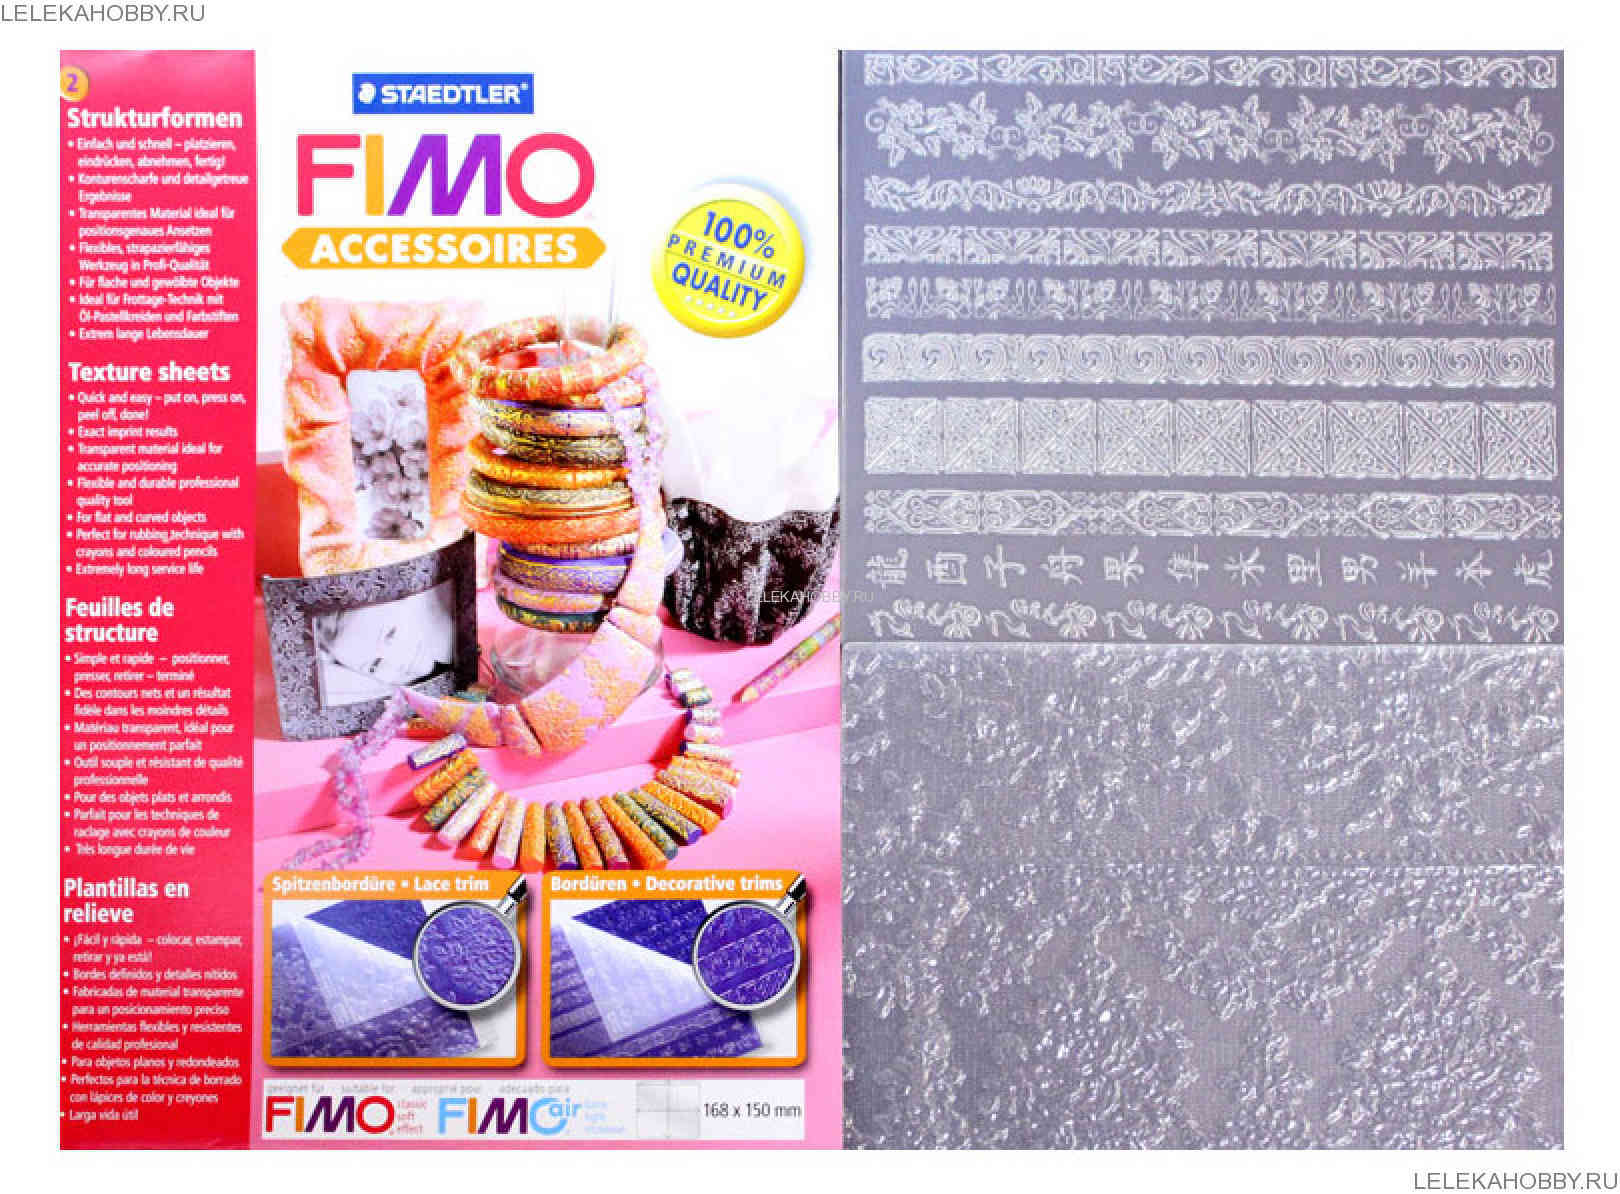 Текстурный лист FIMO в ассортименте